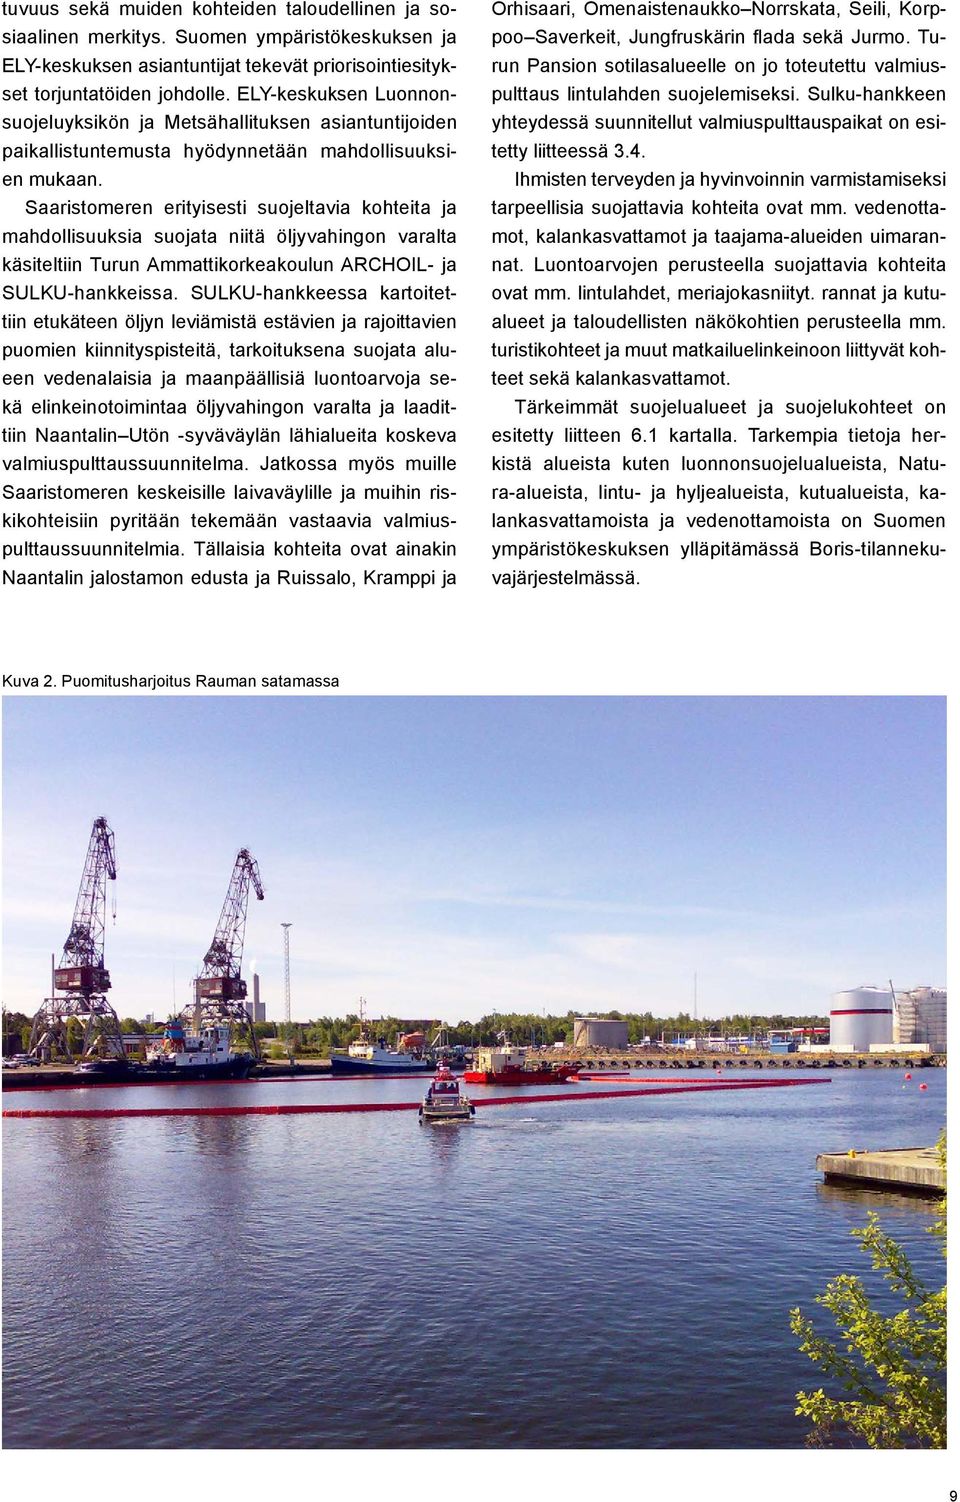 Saaristomeren erityisesti suojeltavia kohteita ja mahdollisuuksia suojata niitä öljyvahingon varalta käsiteltiin Turun Ammattikorkeakoulun ARCHOIL- ja SULKU-hankkeissa.